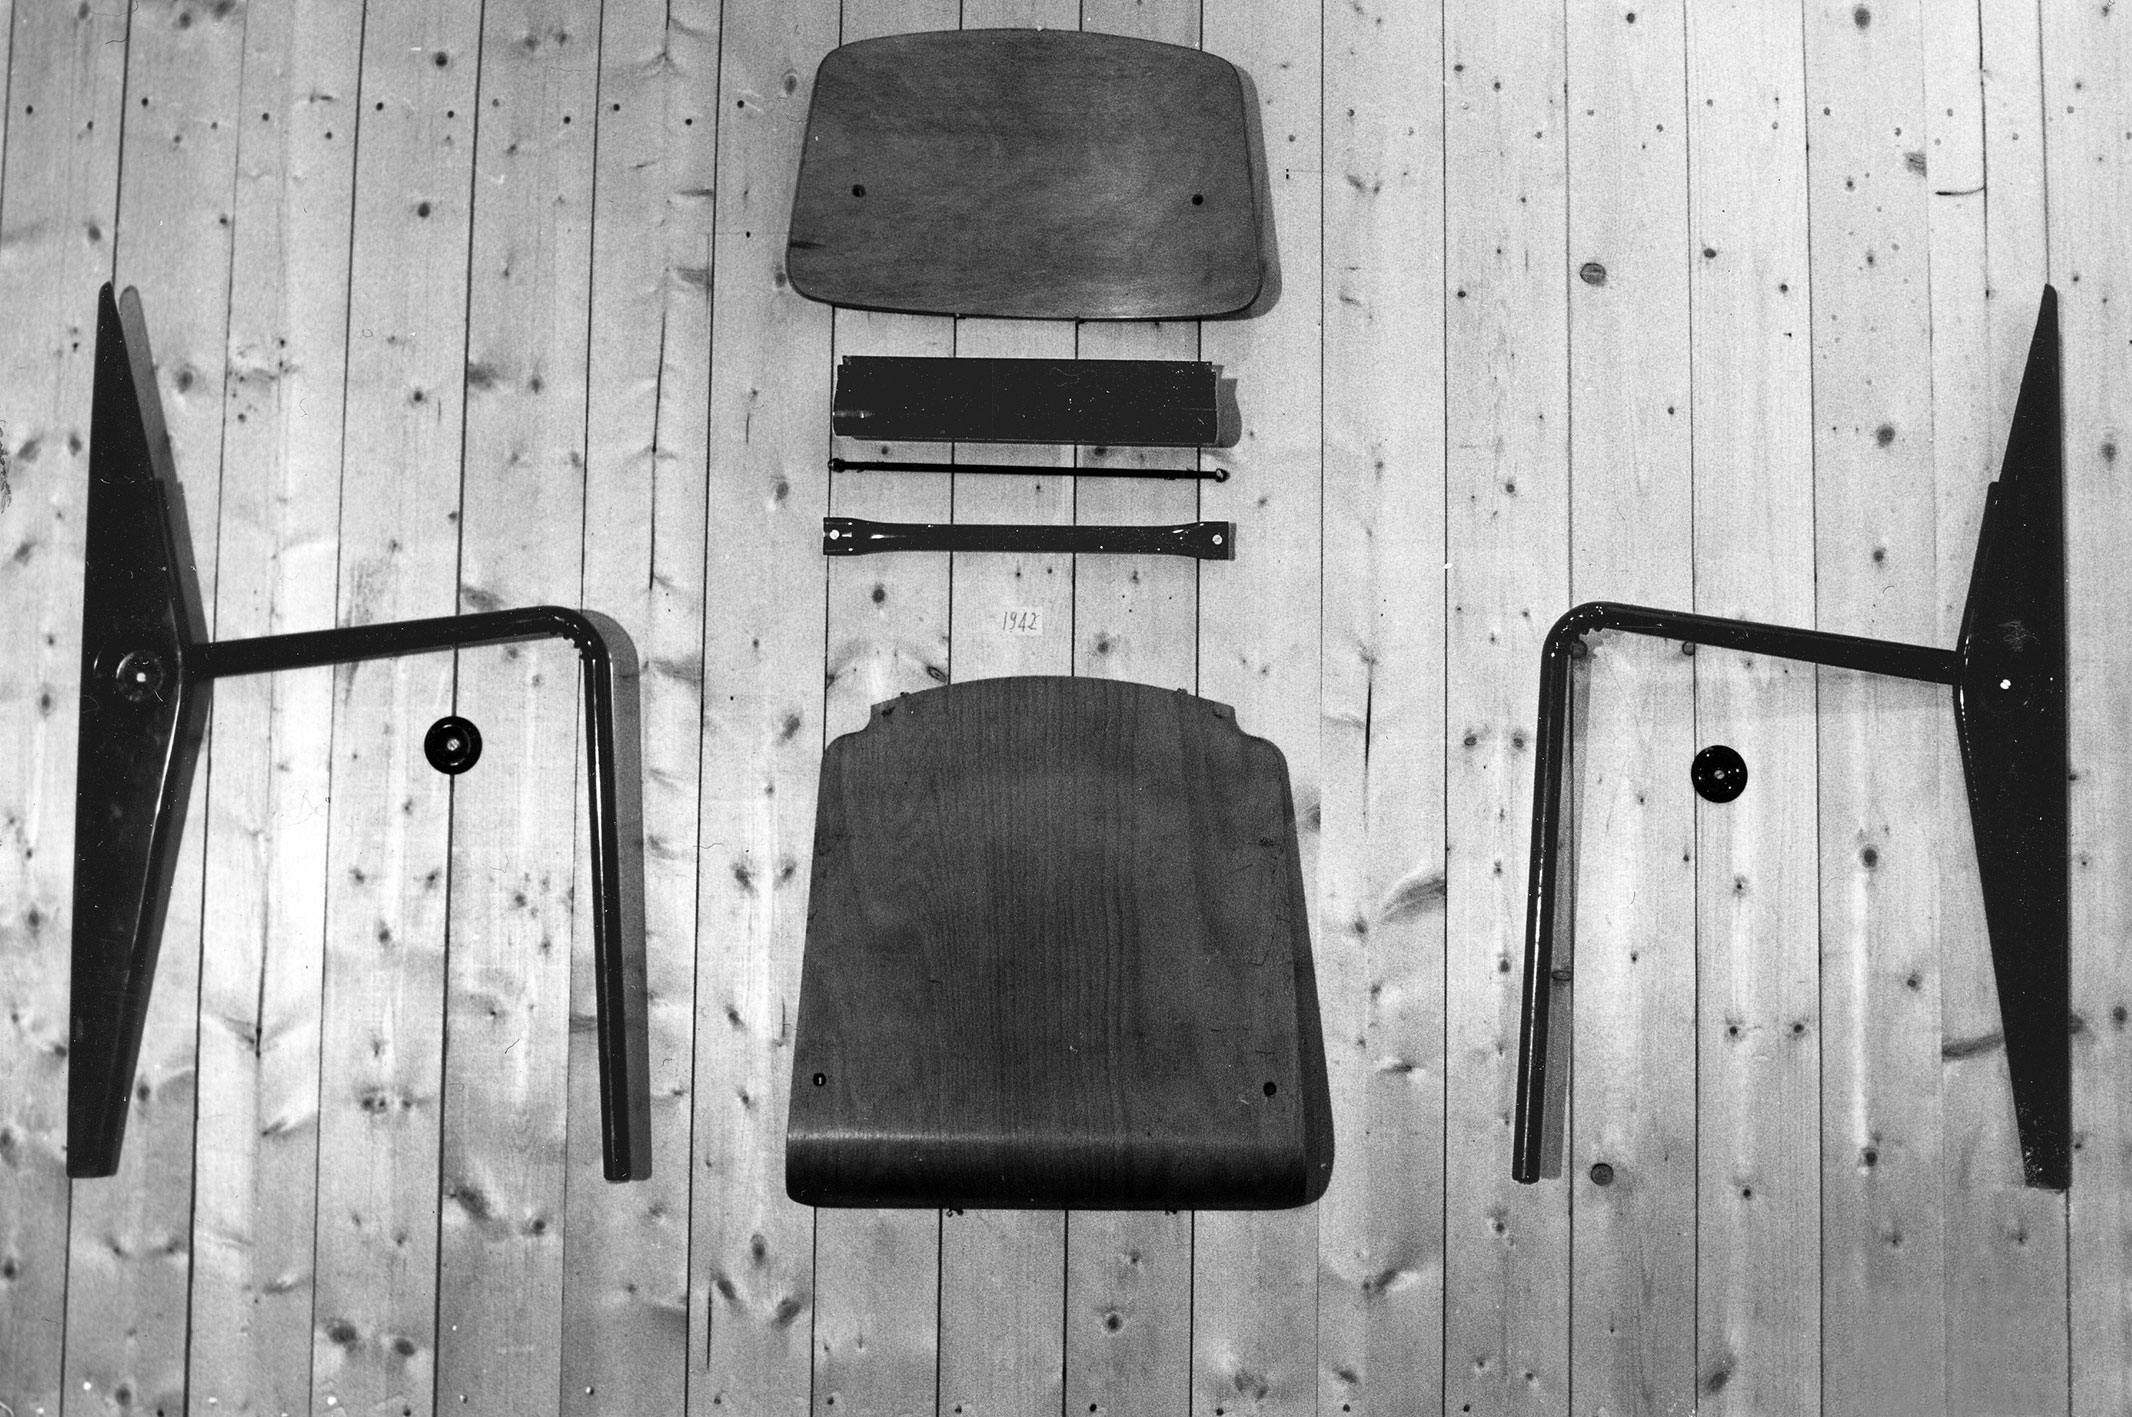 Cafétéria no. 300 chair 1950, presentation of component parts at the Ateliers Jean Prouvé.